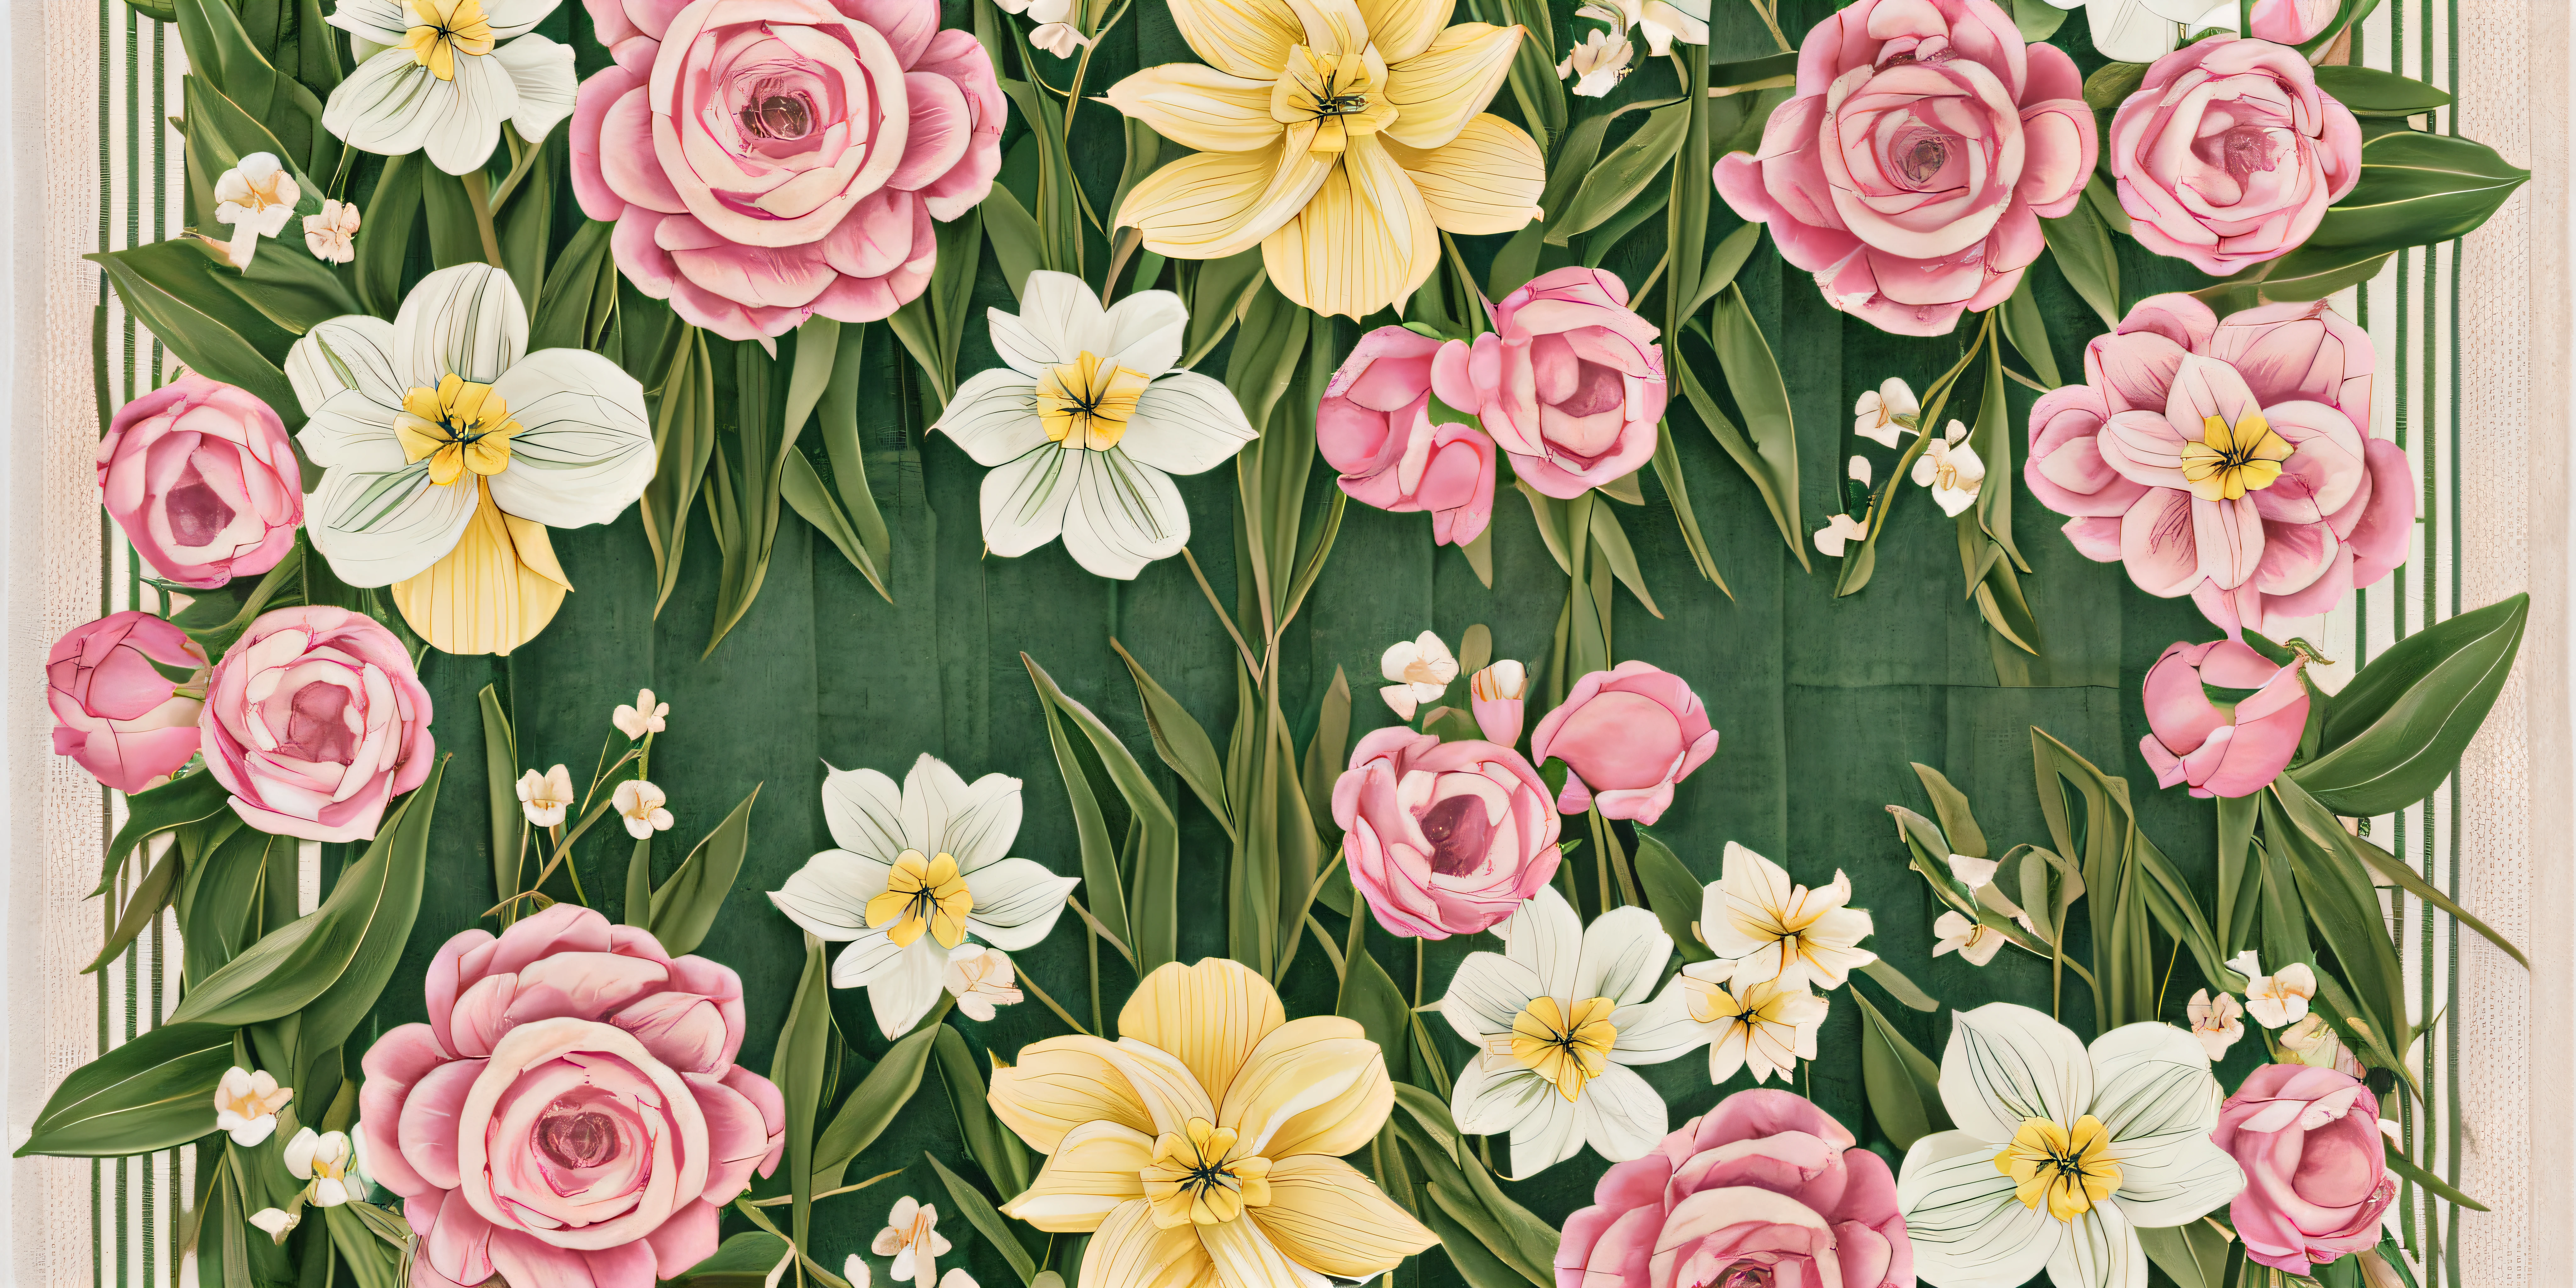 说明 16:9 幅玫瑰和郁金香组成的视觉冲击力十足的构图, 绣球花, 和水仙花, 水平放置，类似于毛巾上的华丽带子 --auto --s2